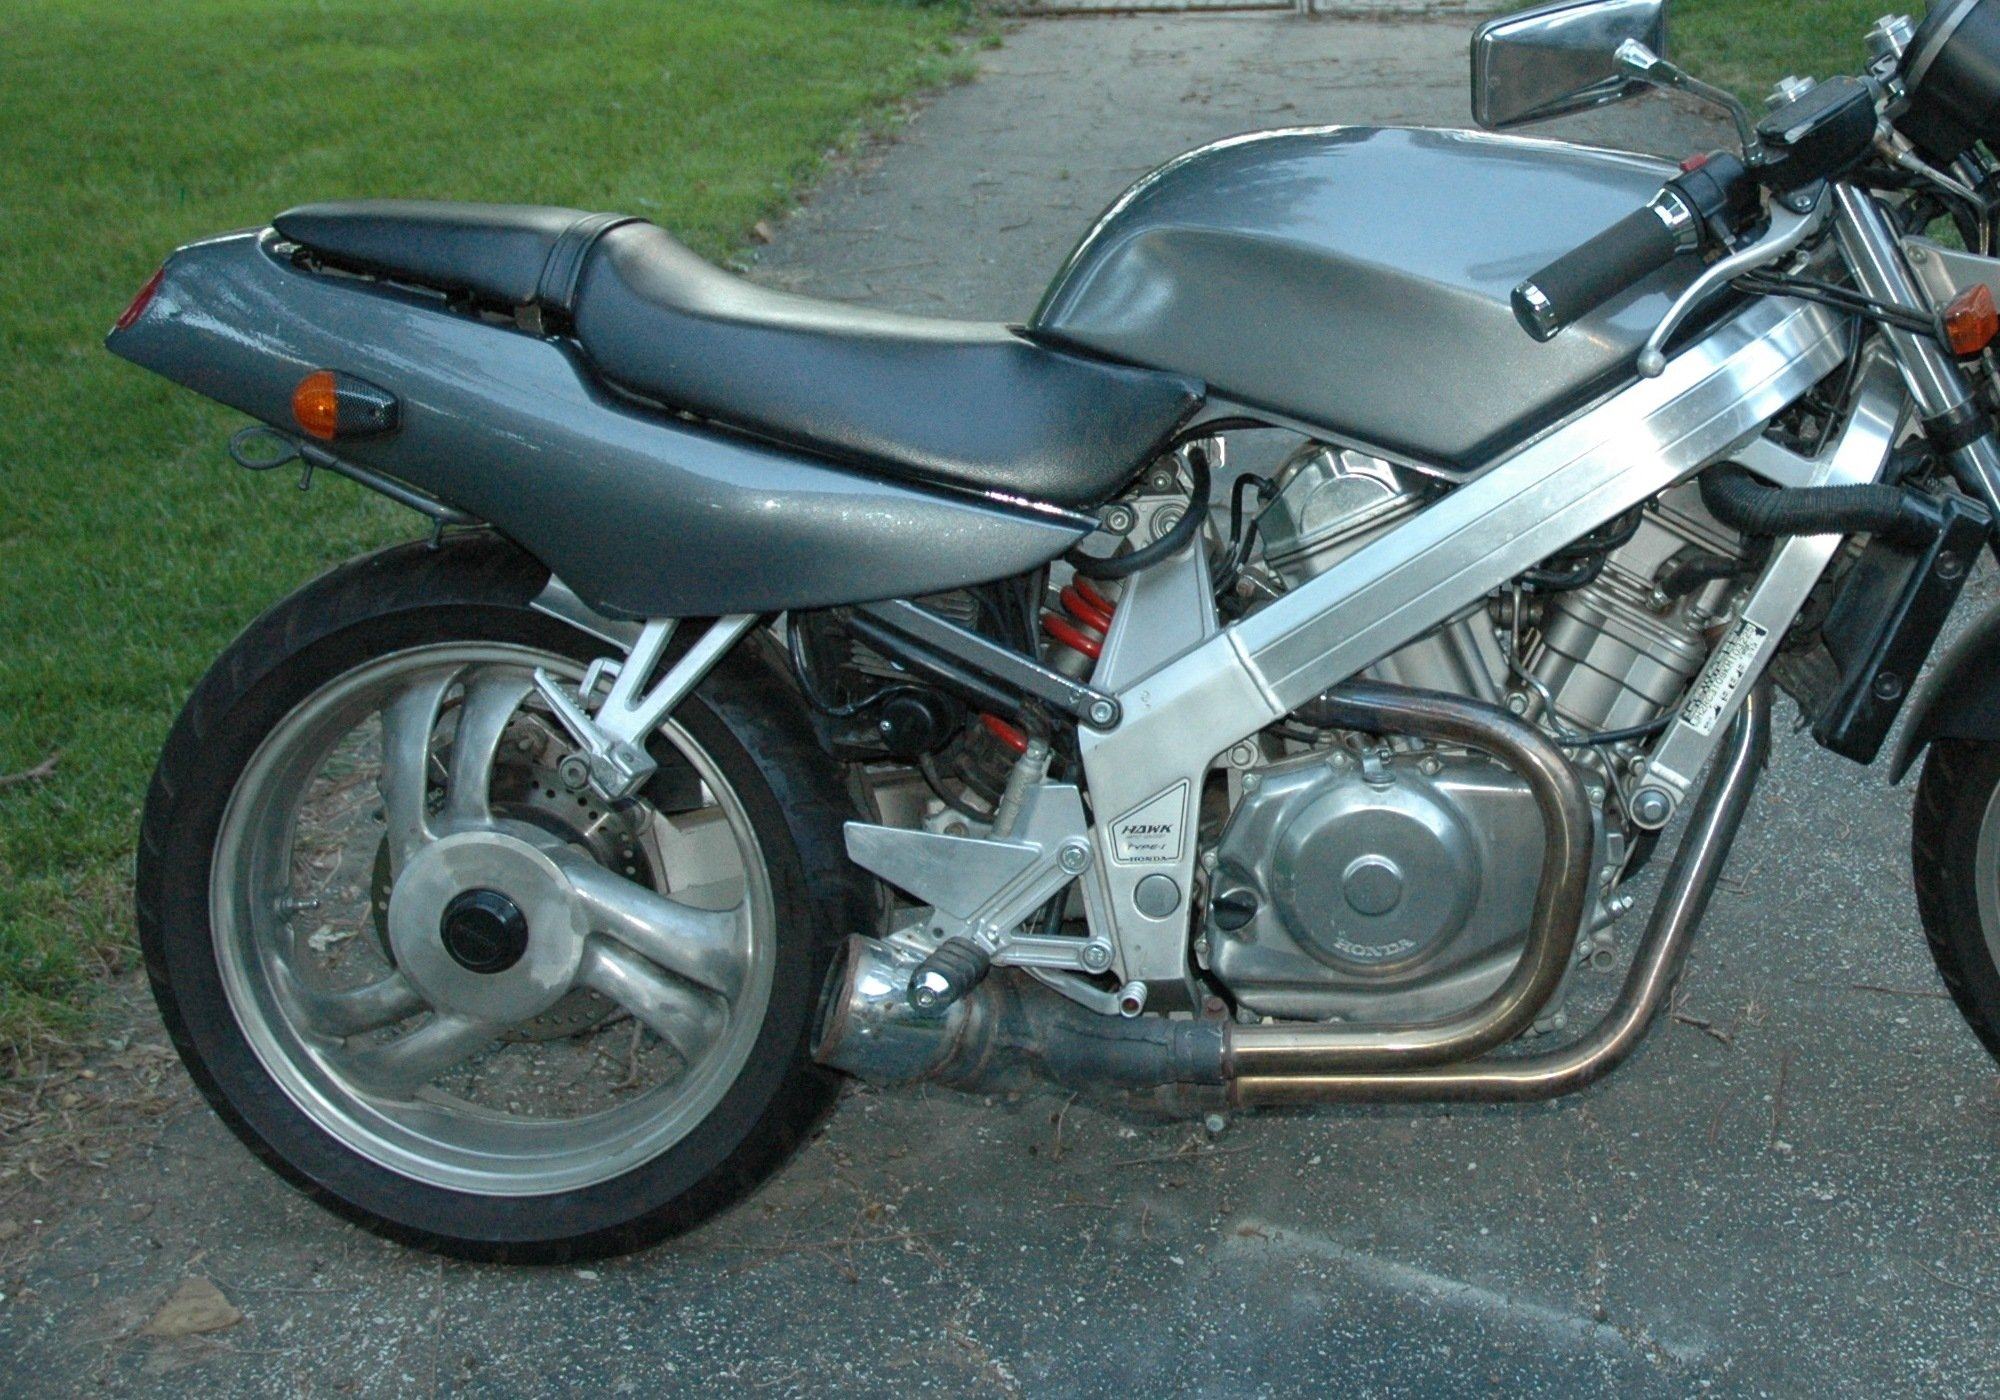 Honda мотоцикл дуги